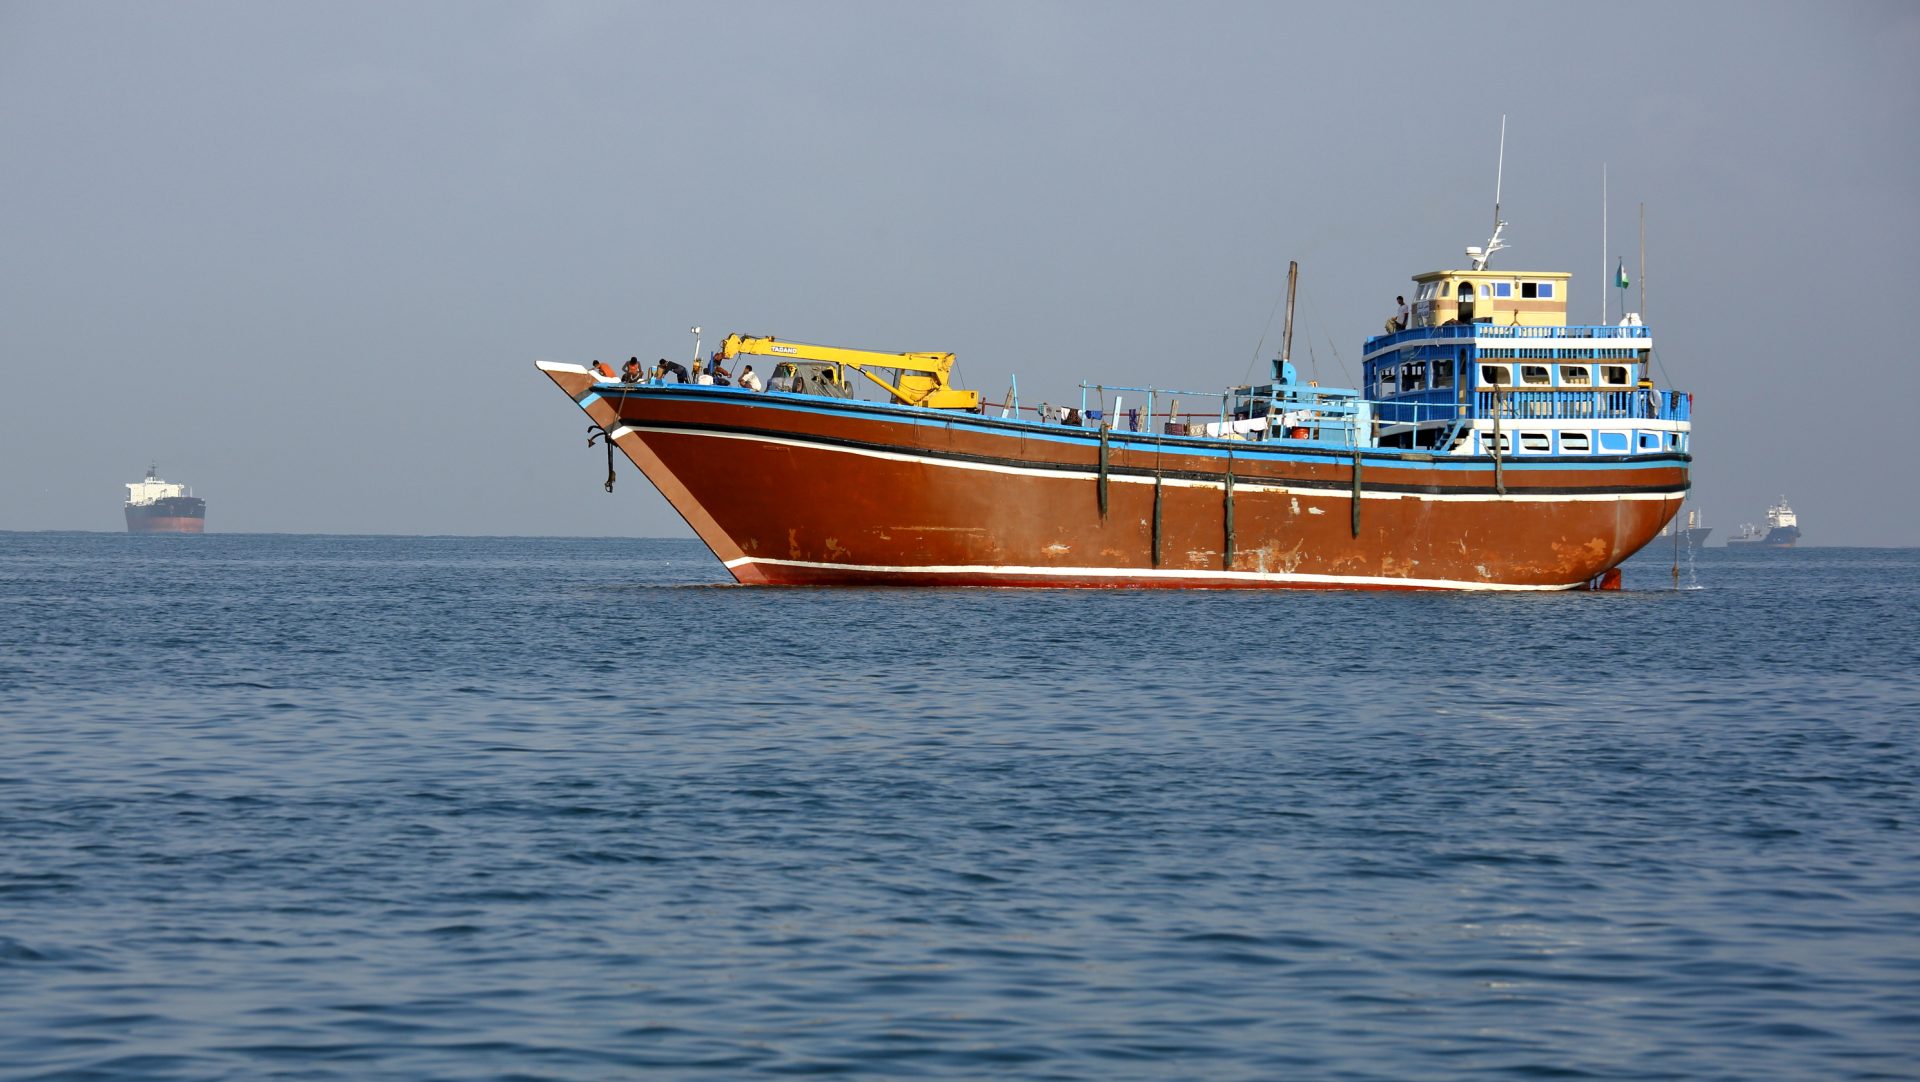 Ataque dos Houthis causa mortes e força tripulação a abandonar barco